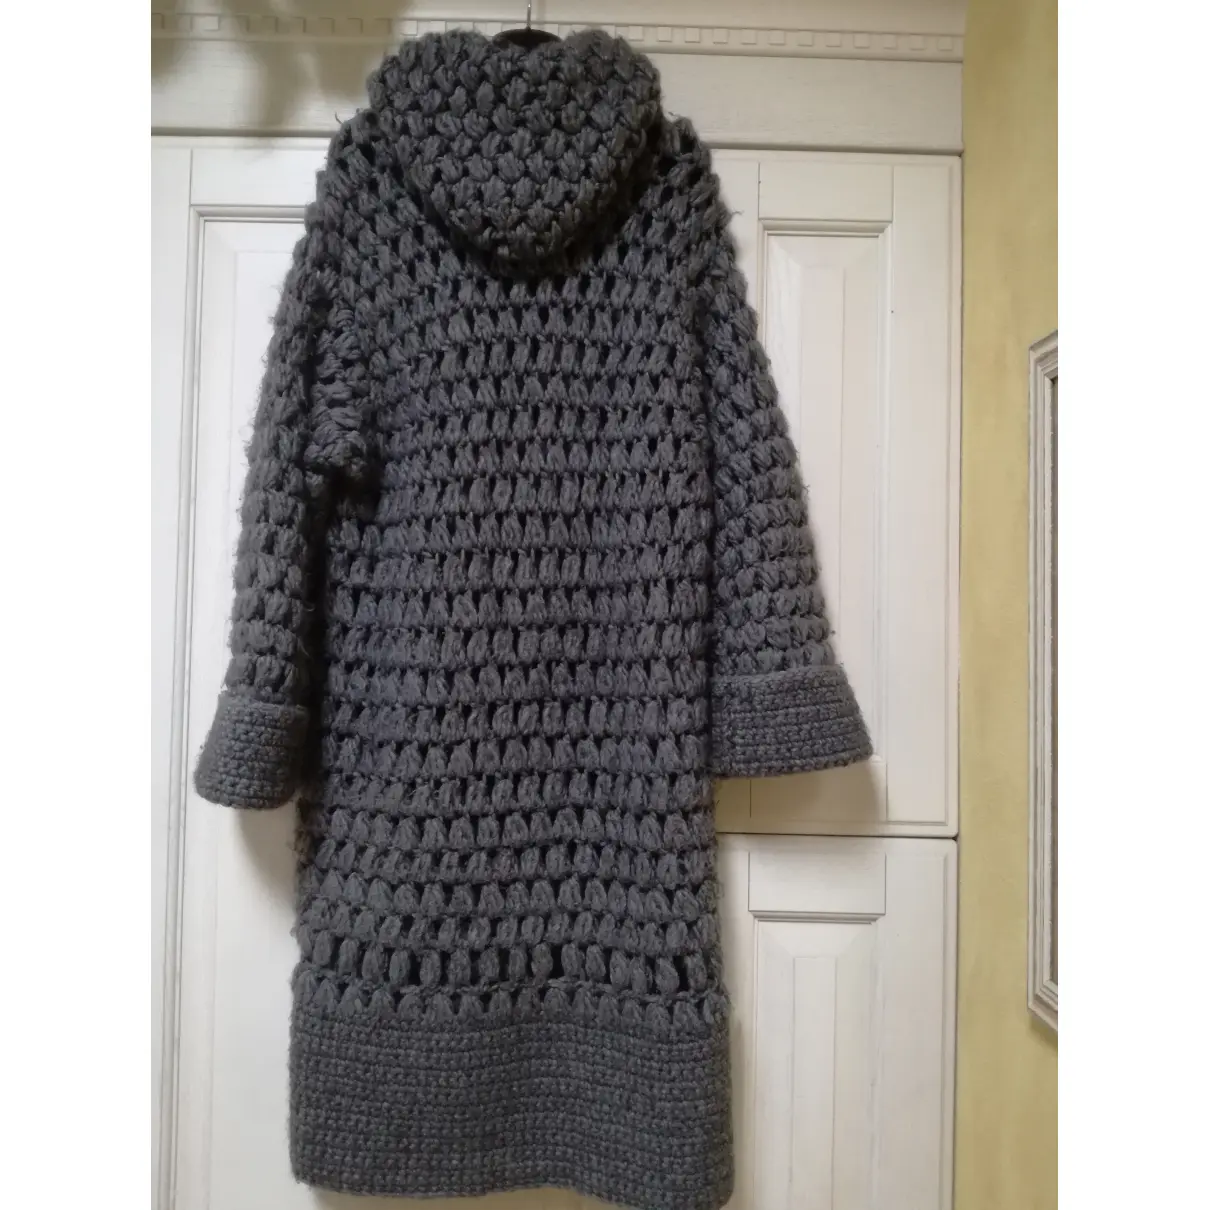 Buy Max & Co Wool coat online